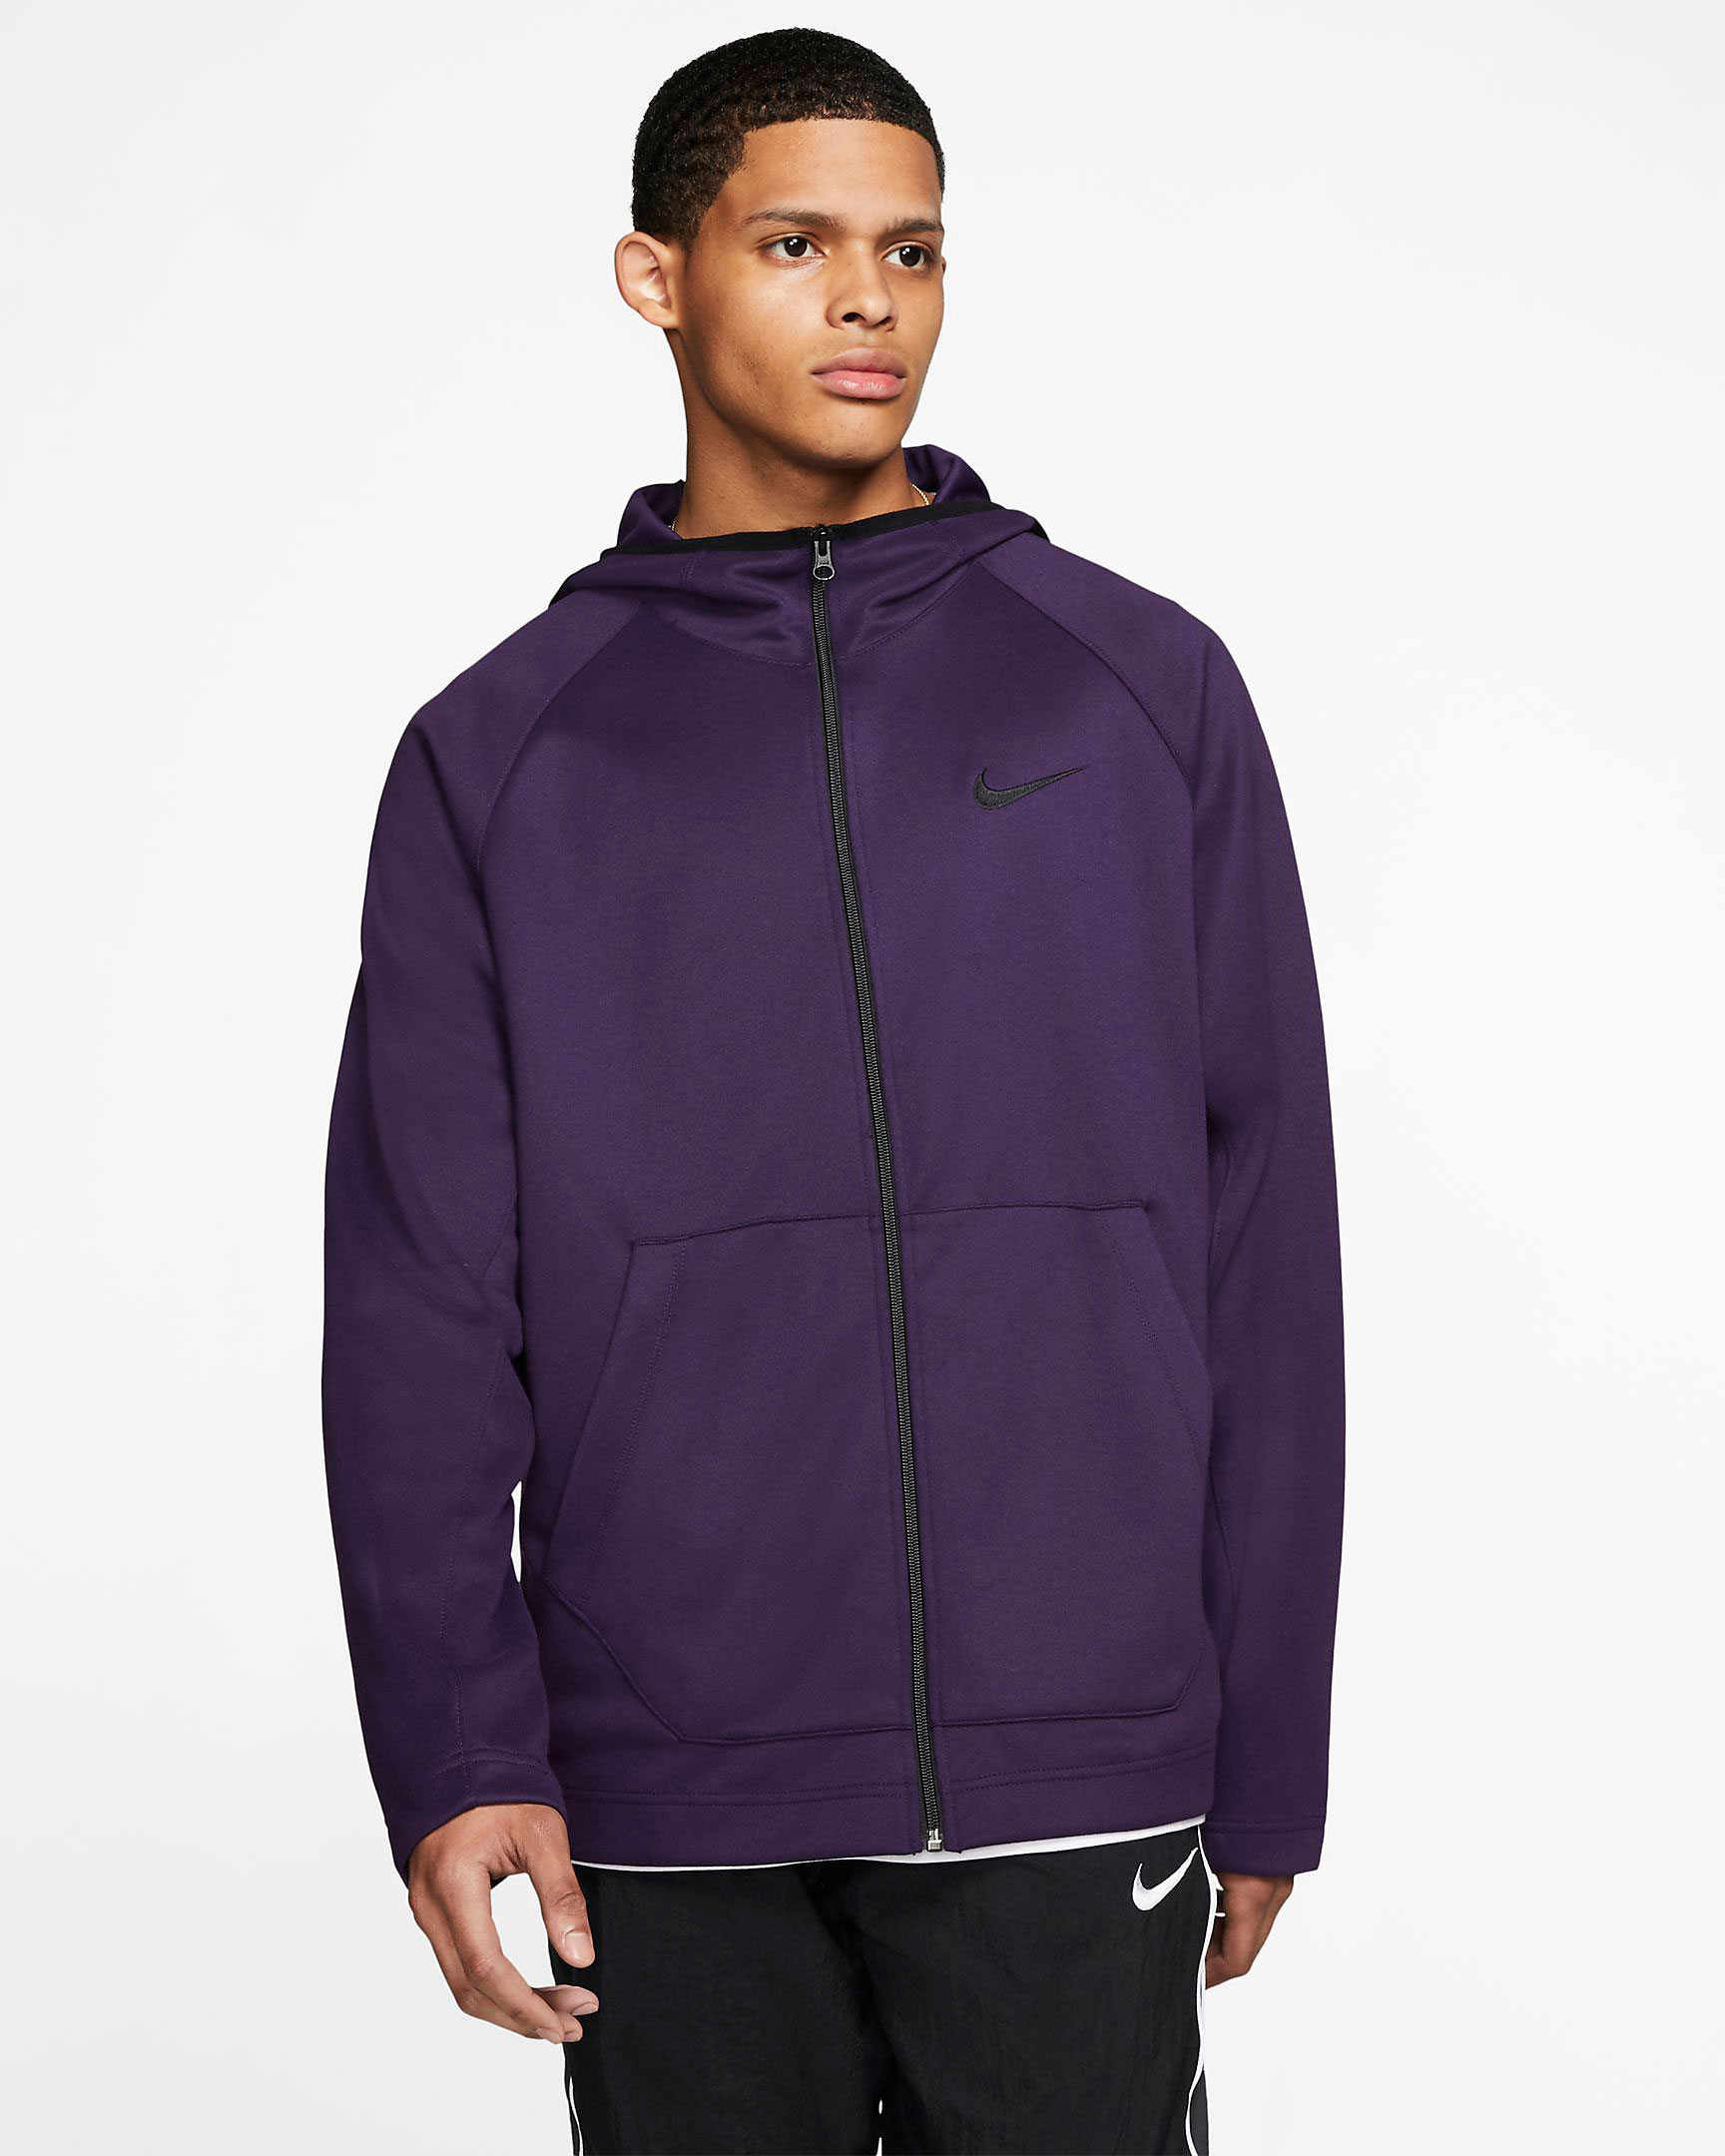 nike-basketball-grand-purple-zip-hoodie